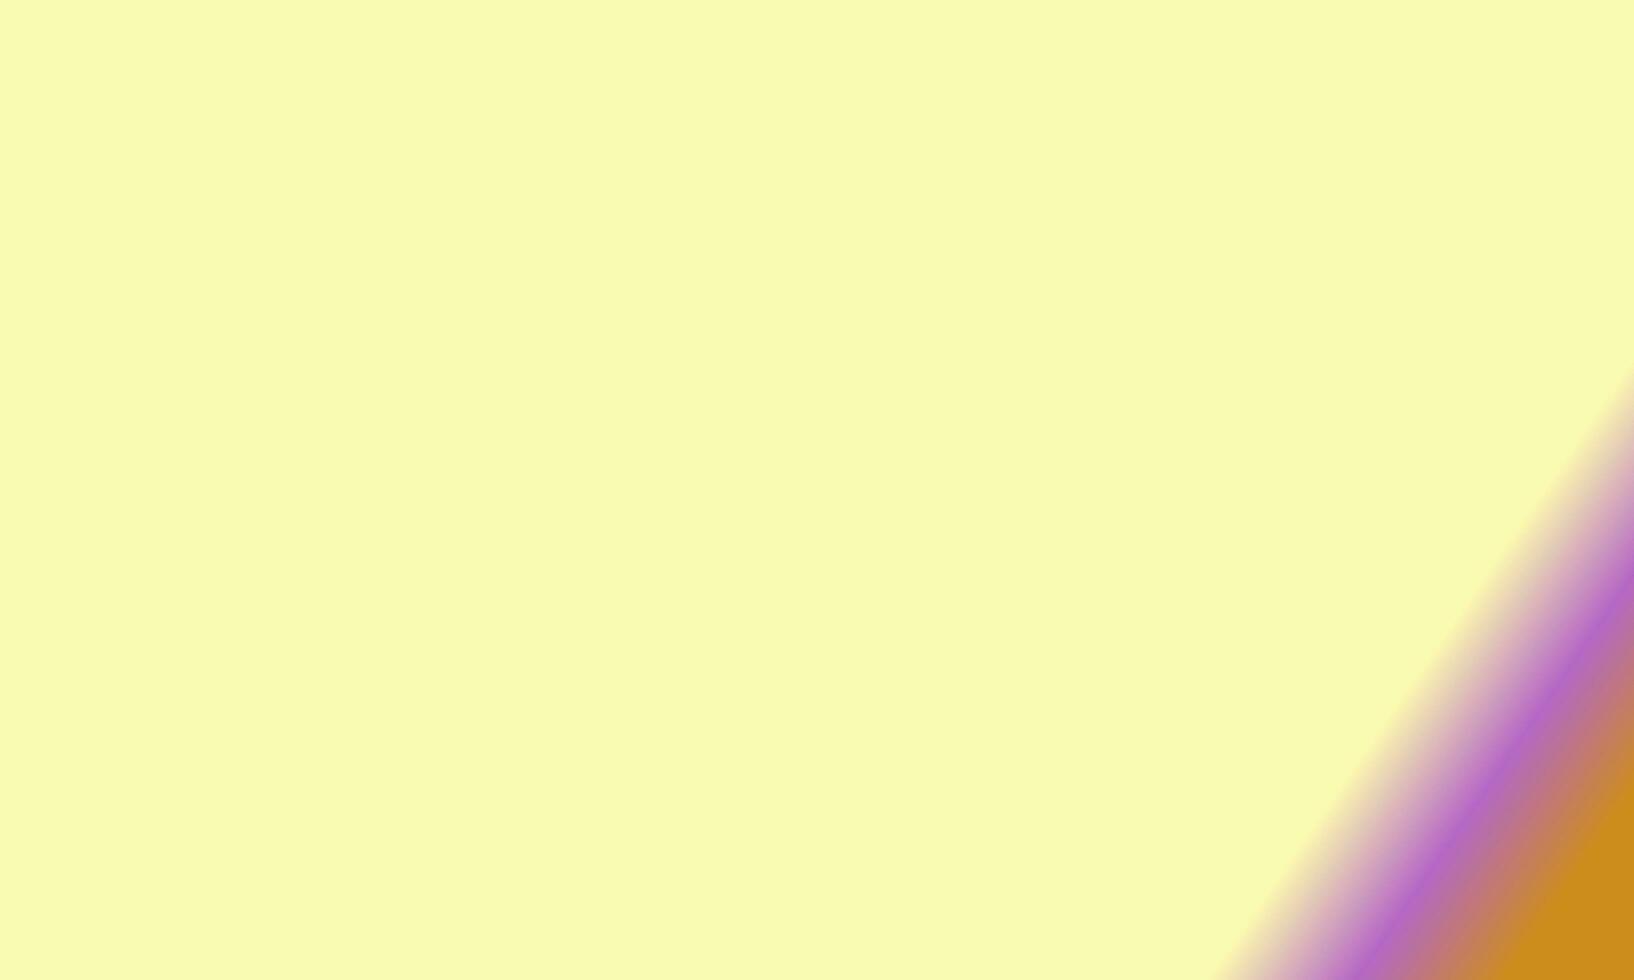 Design einfach Pastell- gelb, lila und braun Gradient Farbe Illustration Hintergrund foto